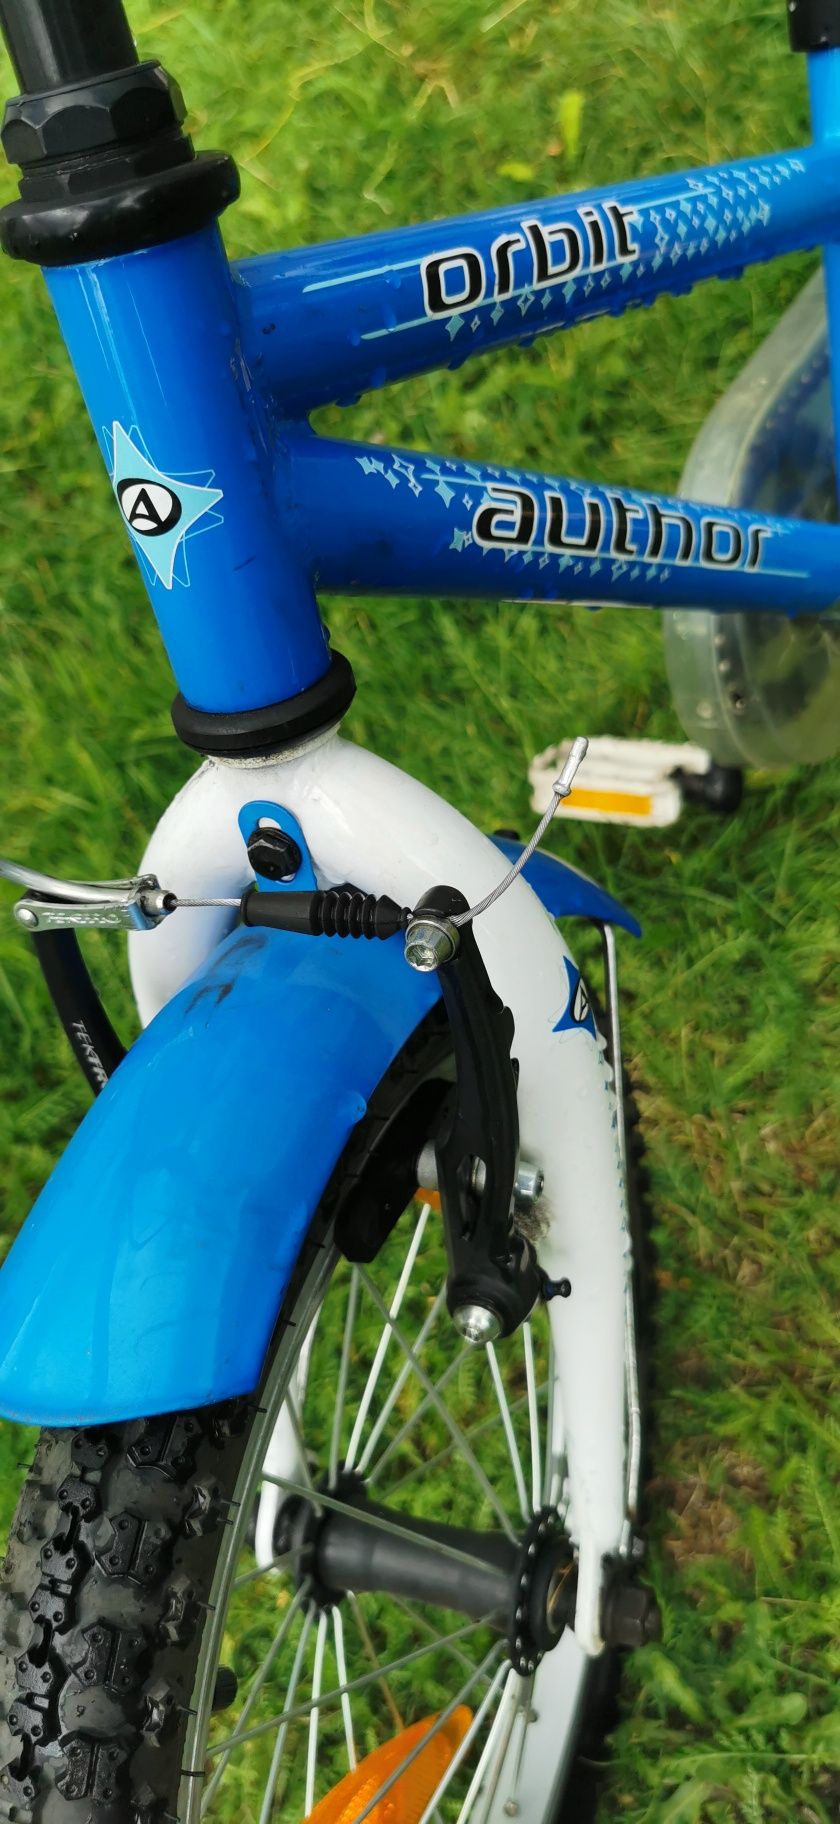 Rower niebieski firmy Author, model Orbit, rozmiar kola 16